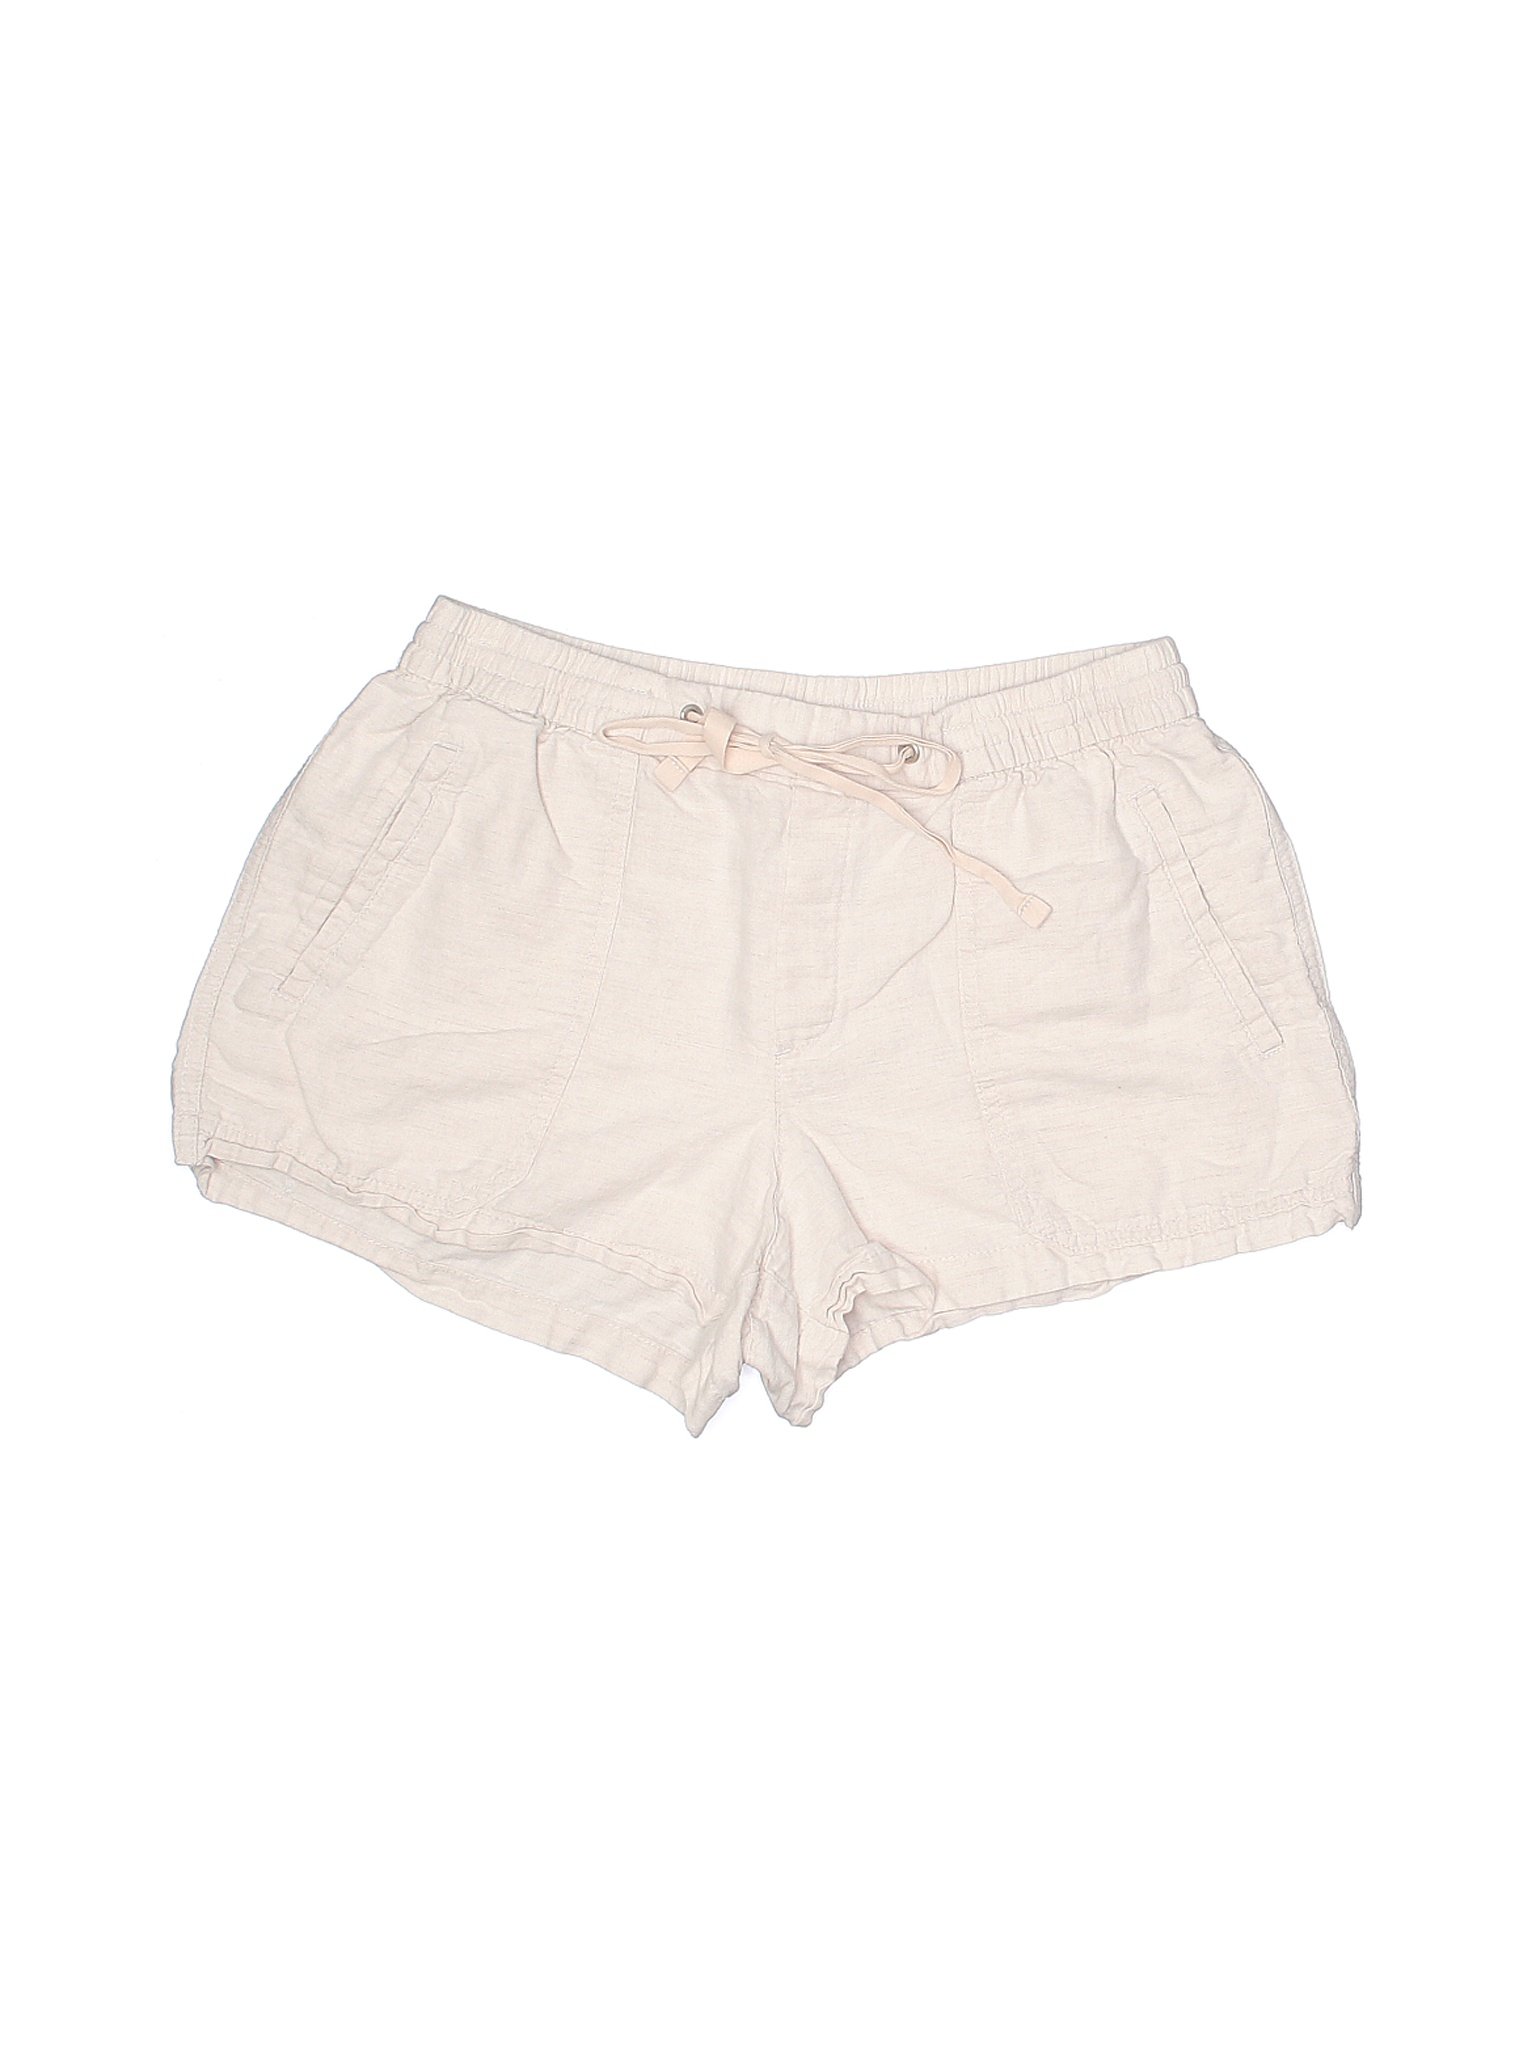 Gap Women Ivory Shorts M | eBay